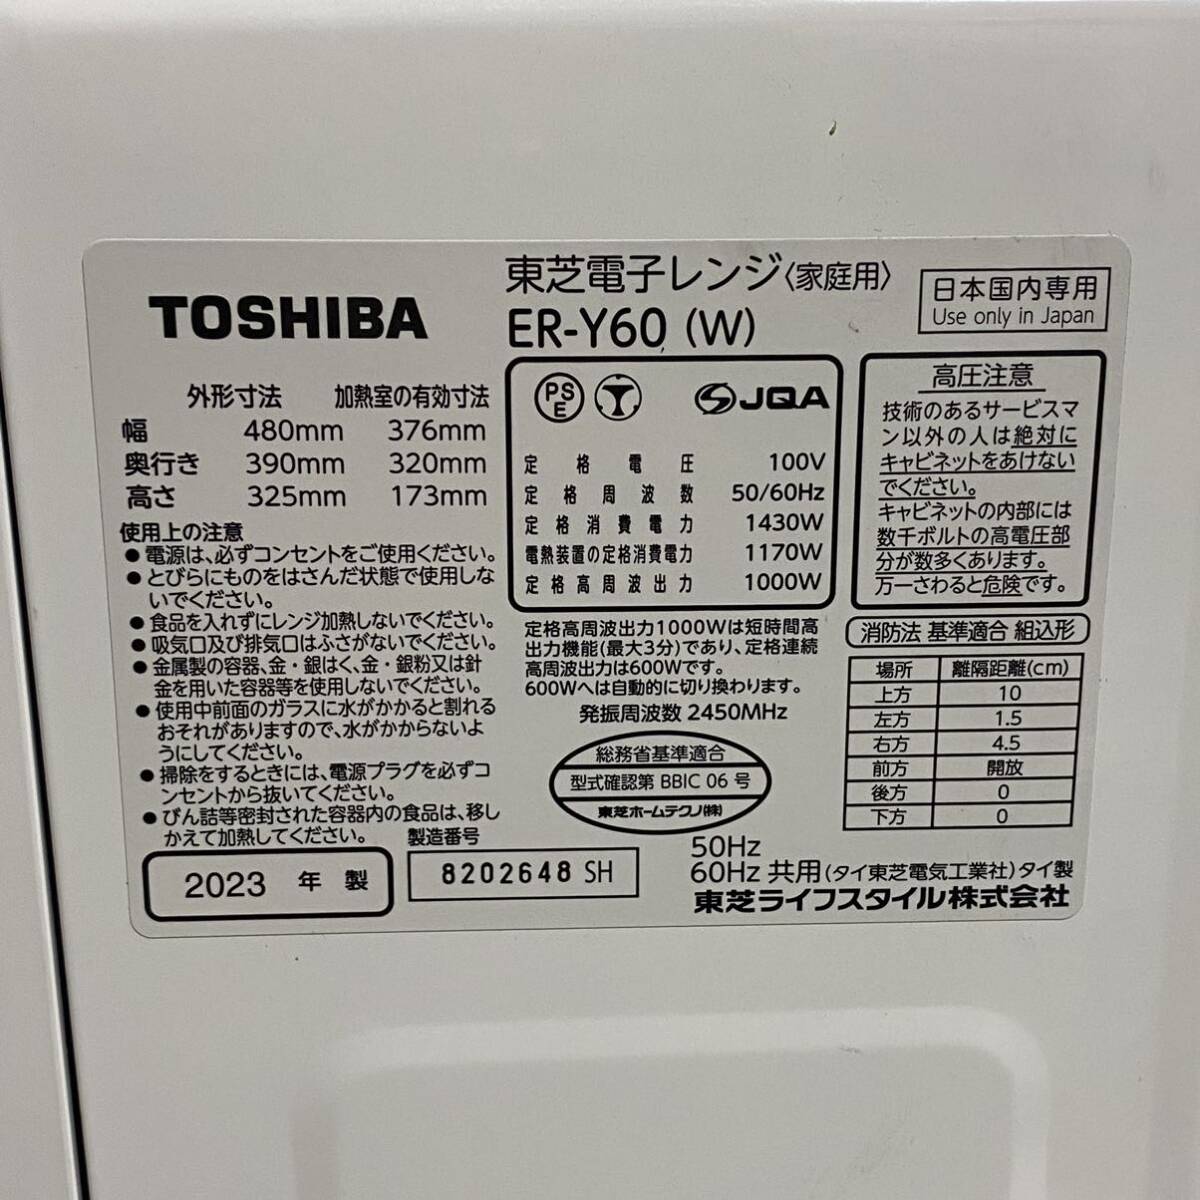  прямые продажи!2023 год производства TOSHIBA / Toshiba конвекционно-паровая печь ER-Y60 белый камень обжиг в печи печь Flat внутри корпус только для бытового использования рабочее состояние подтверждено 